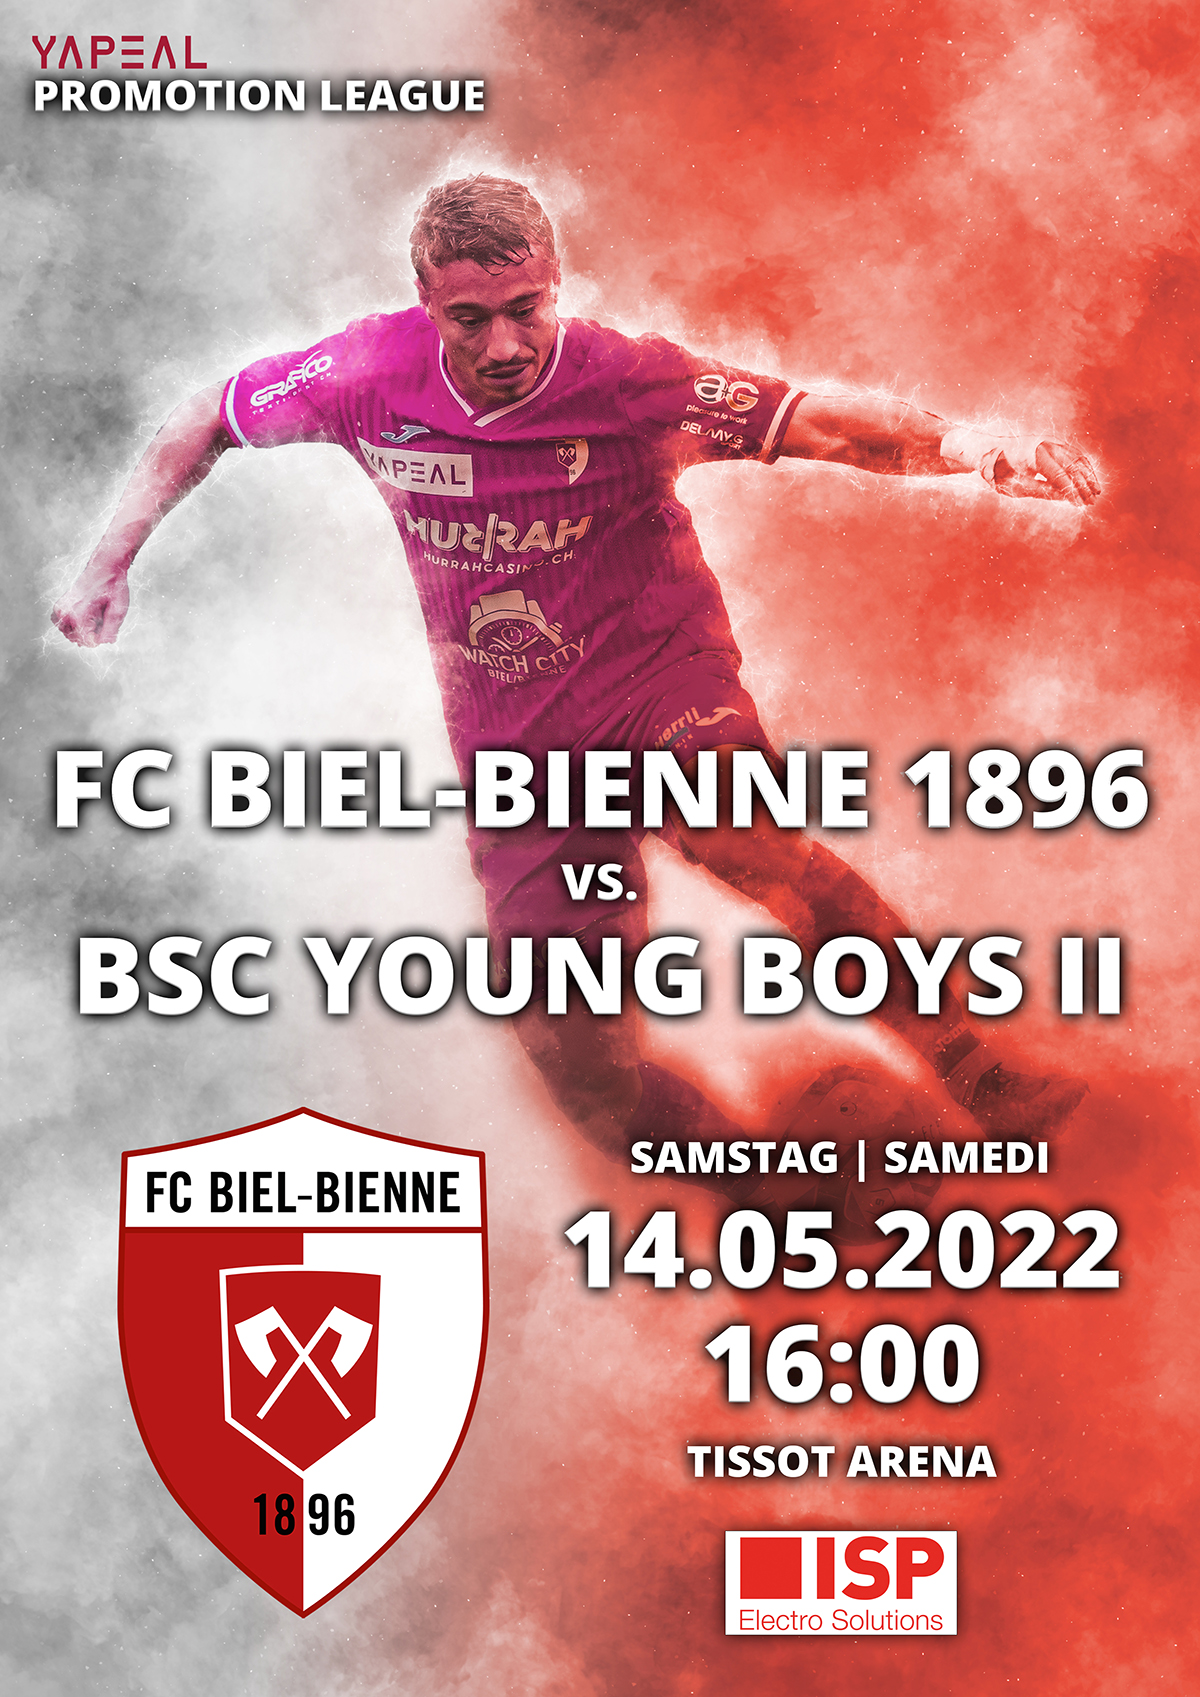 FC Biel-Bienne 1896 vs. BSC Young Boys II